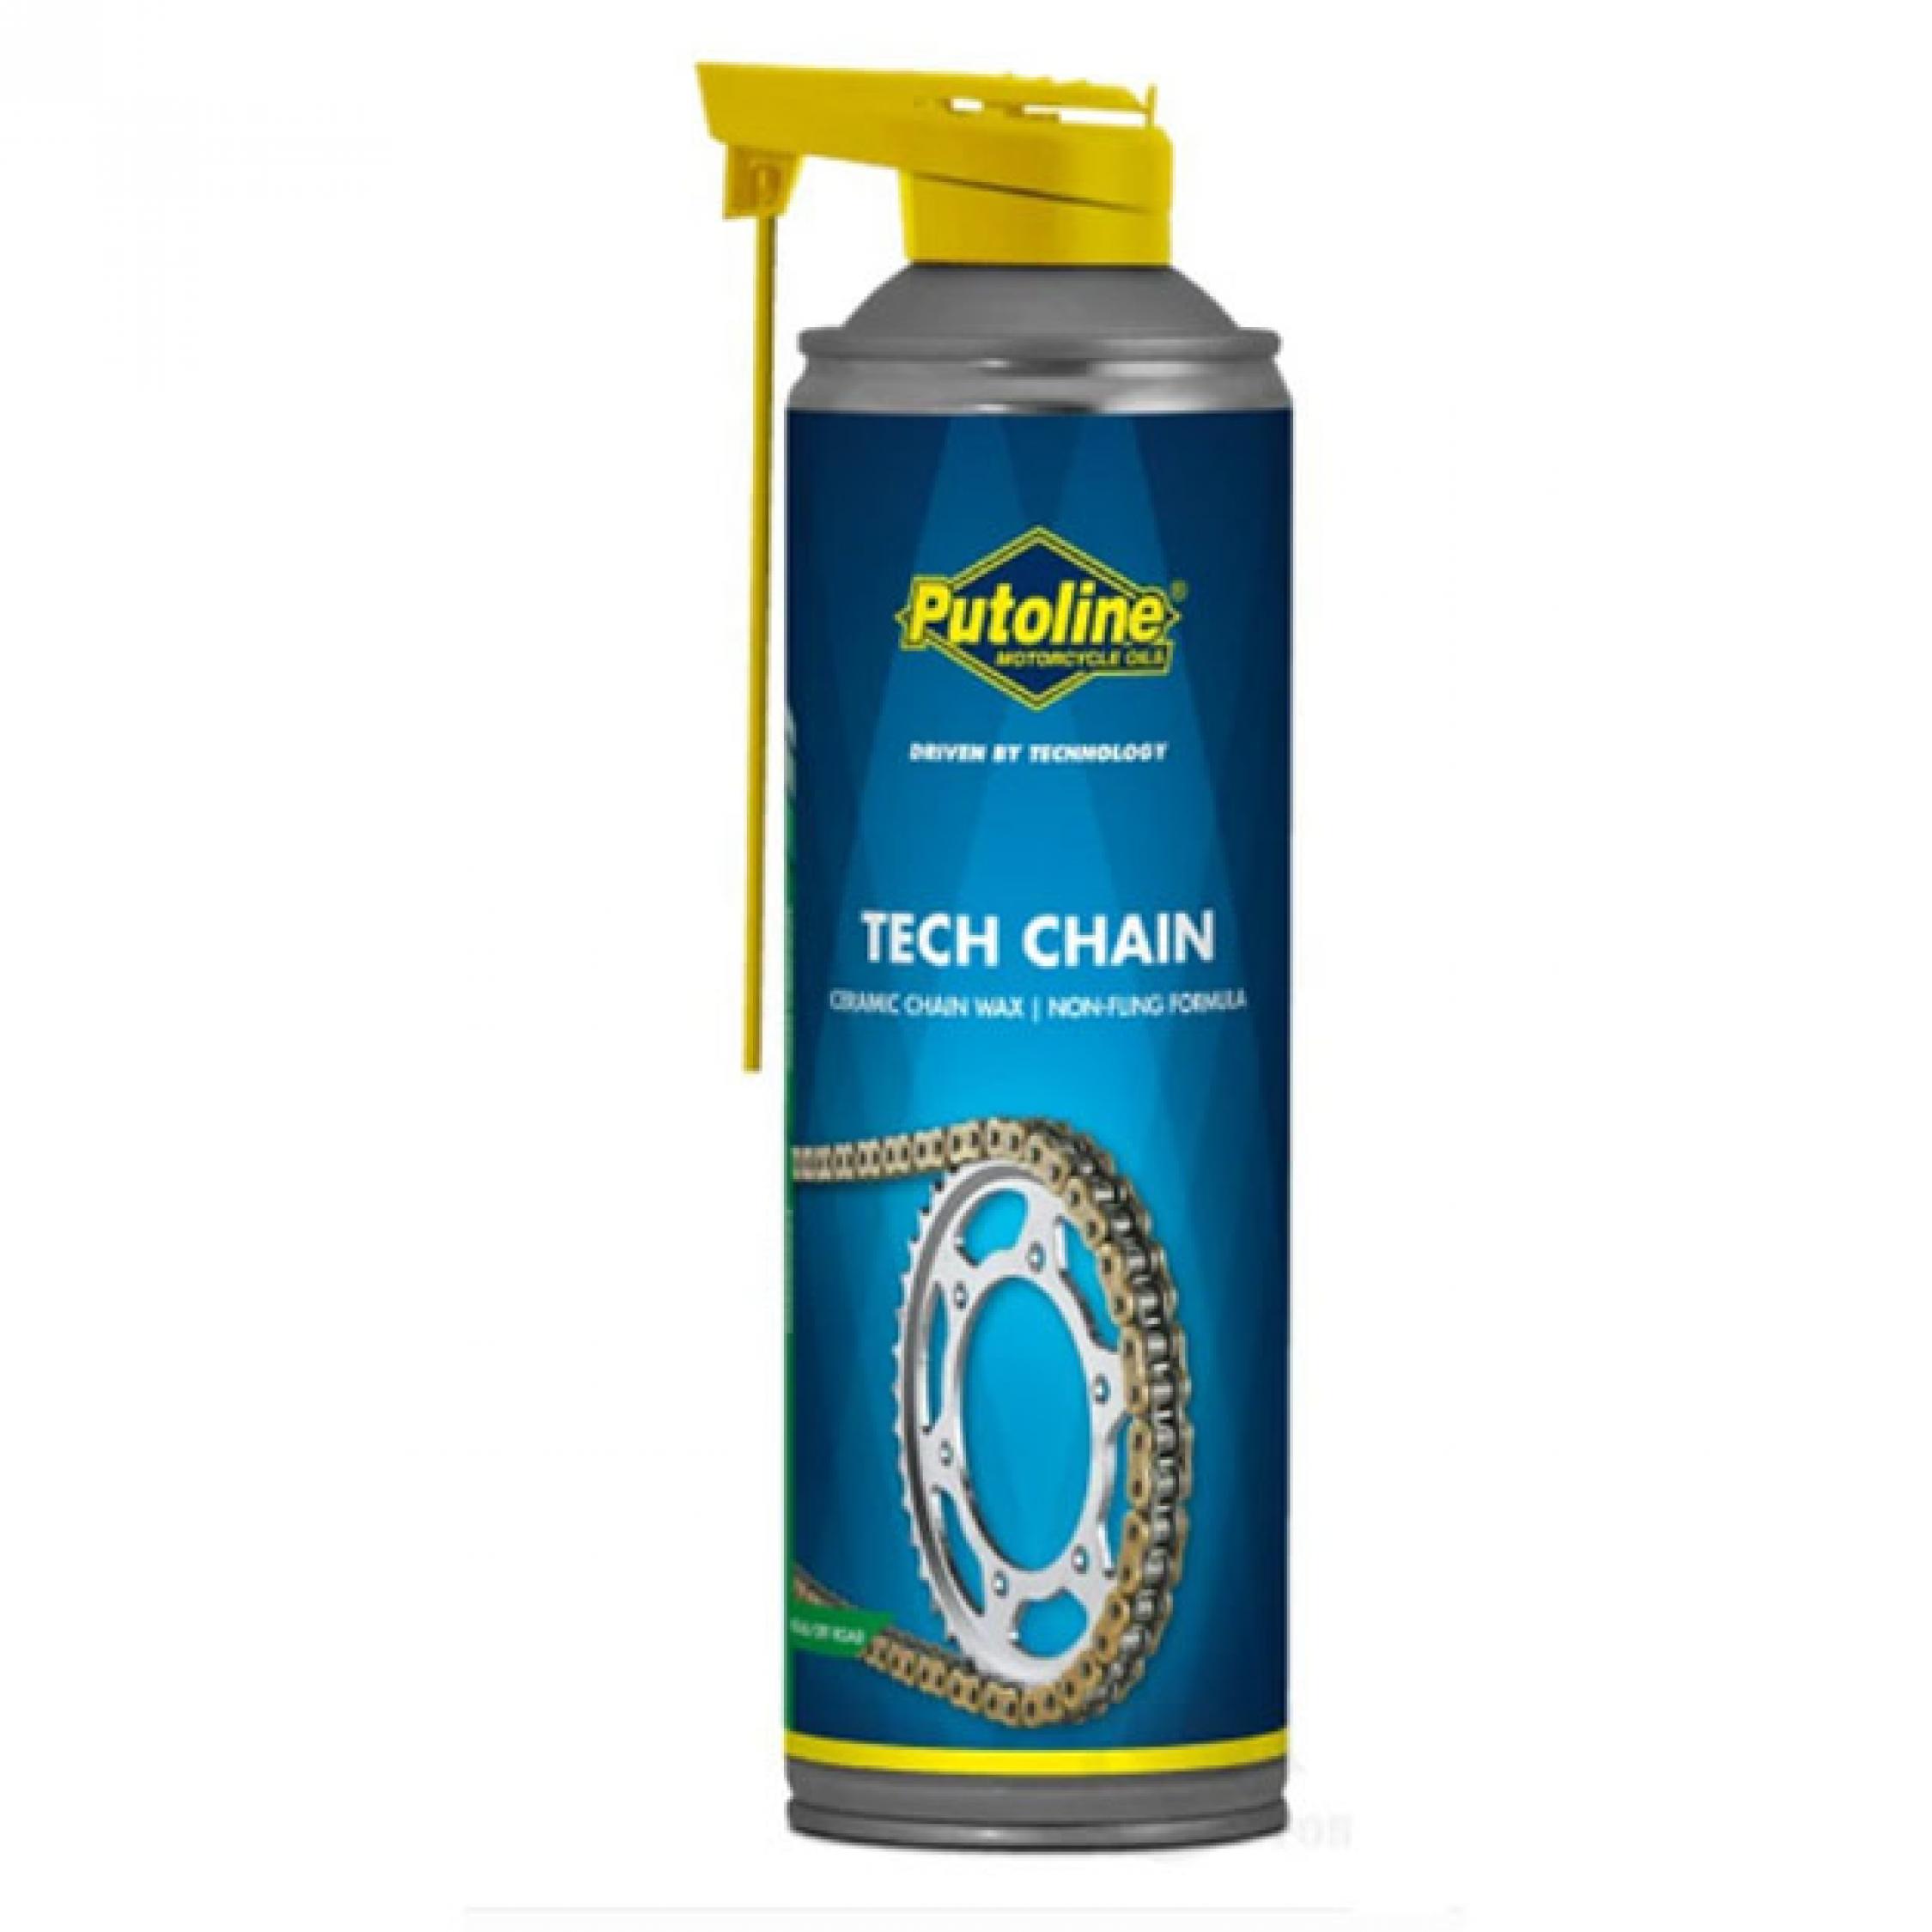 Tech Chain 500ml